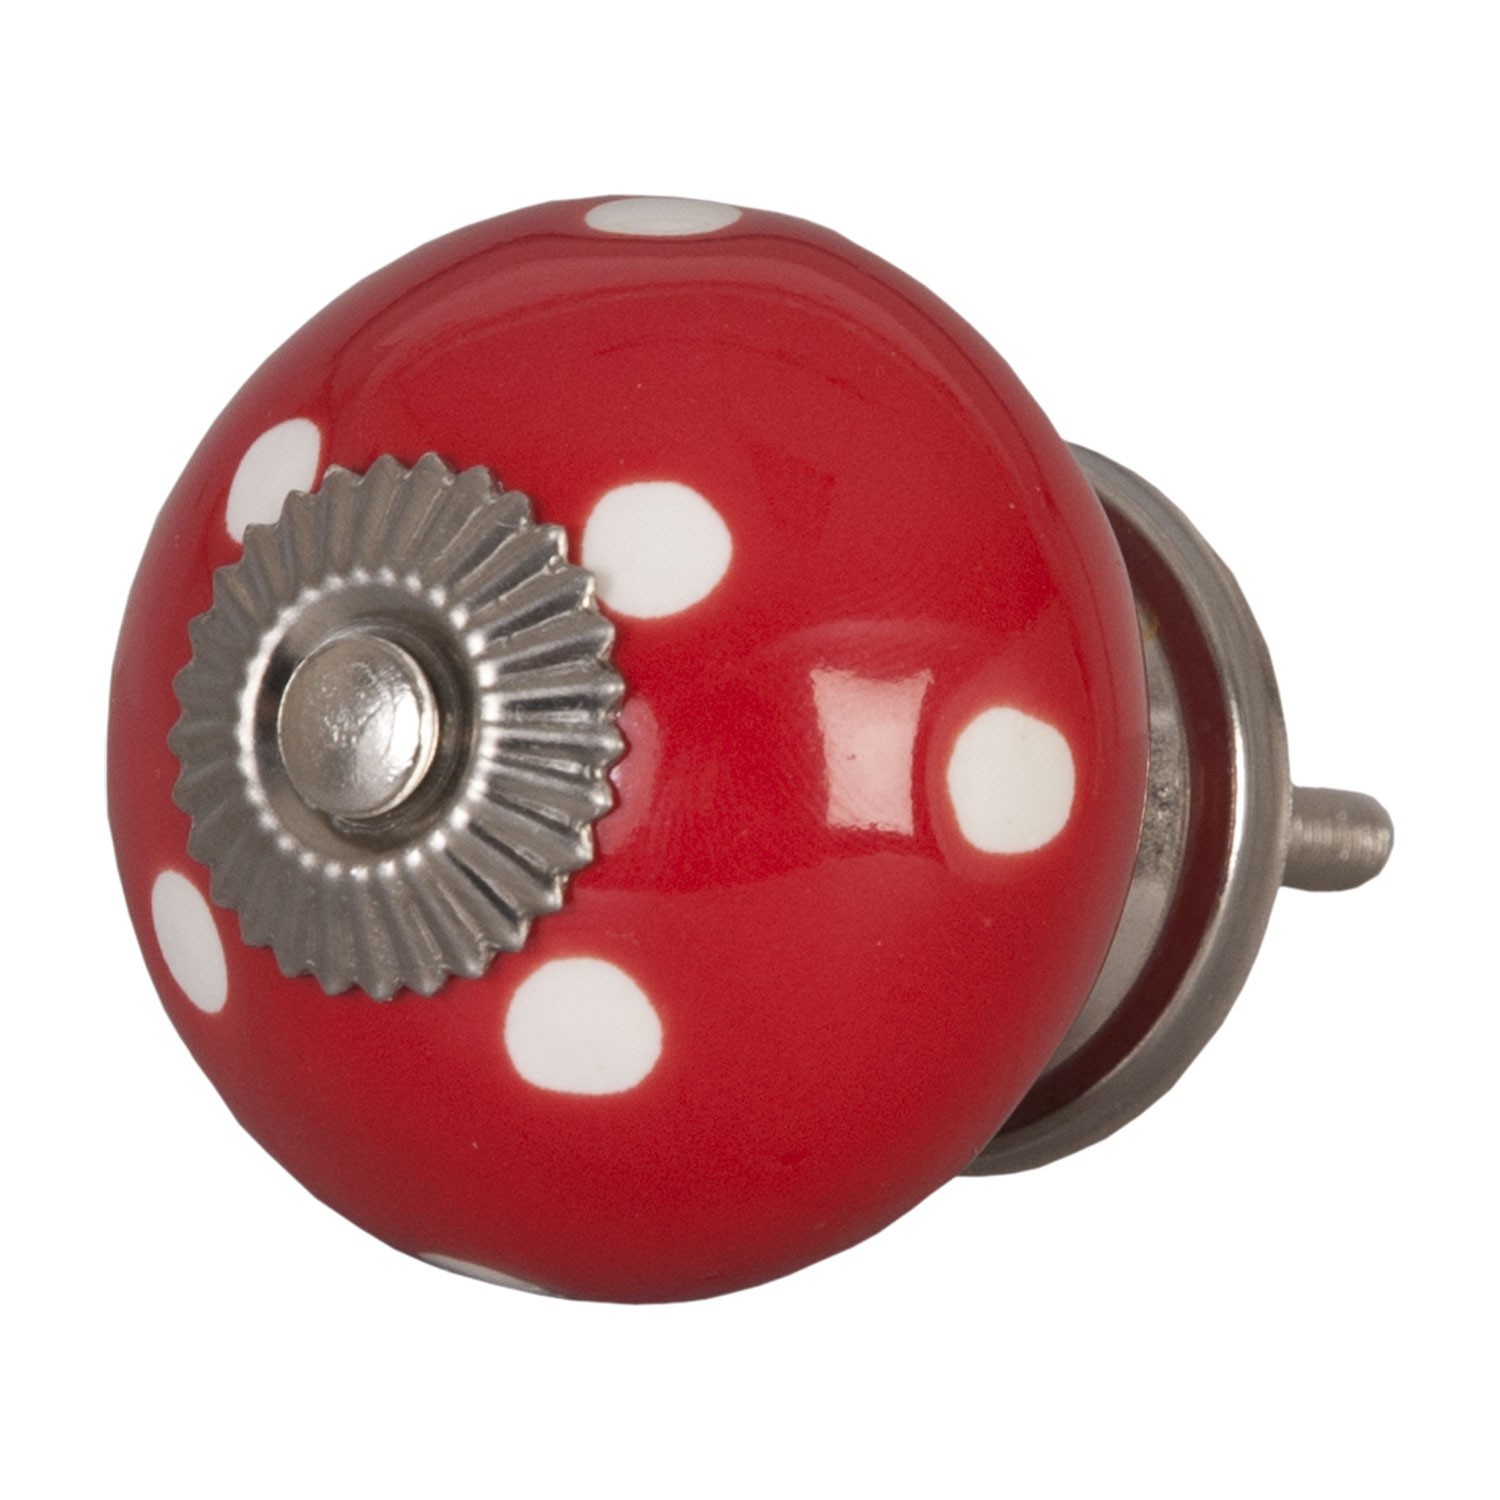 Červená keramicka úchytka s puntíky - Ø 4 cm 62326